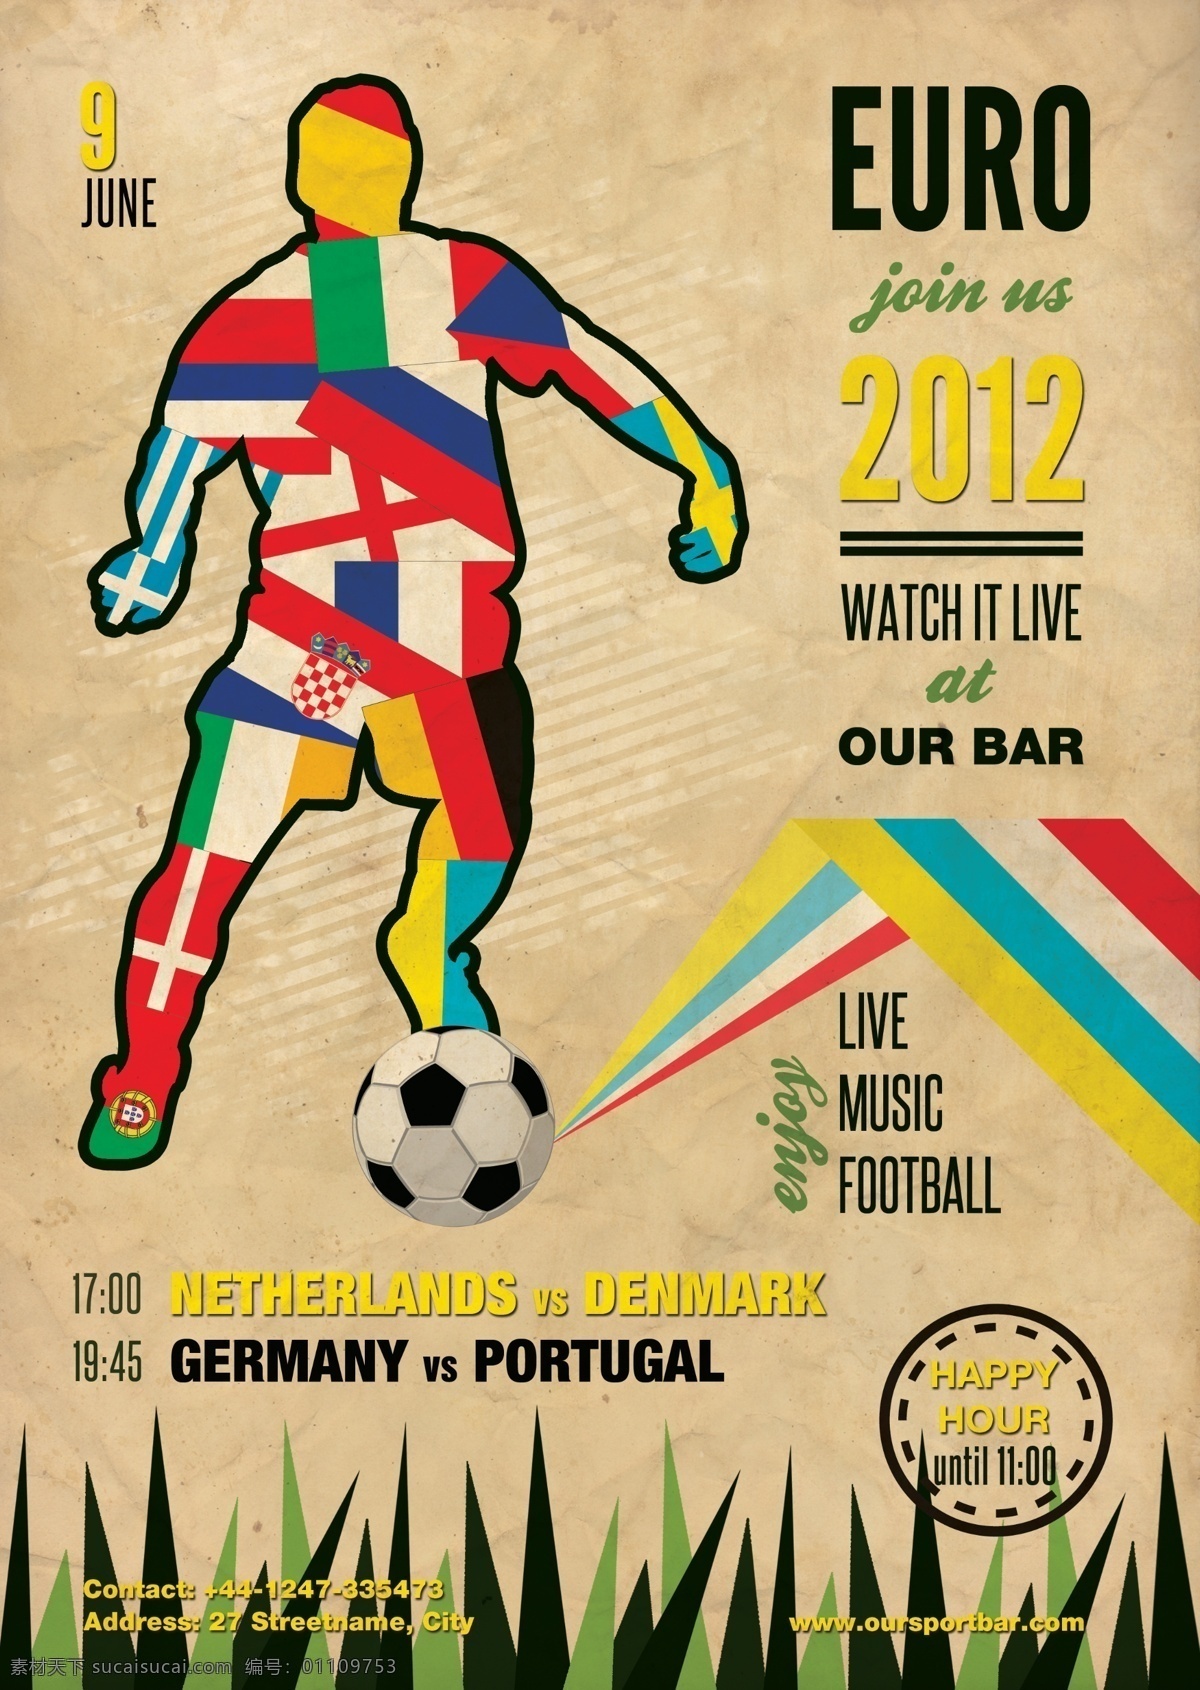 欧洲杯 足球赛 主题 海报 模版下载 世界杯 踢球 欧洲 国旗 创意 比赛 欧洲足球 欧陆绿茵 足球比赛海报 德劳内杯 冠军 足球对决 源文件 广告设计模板